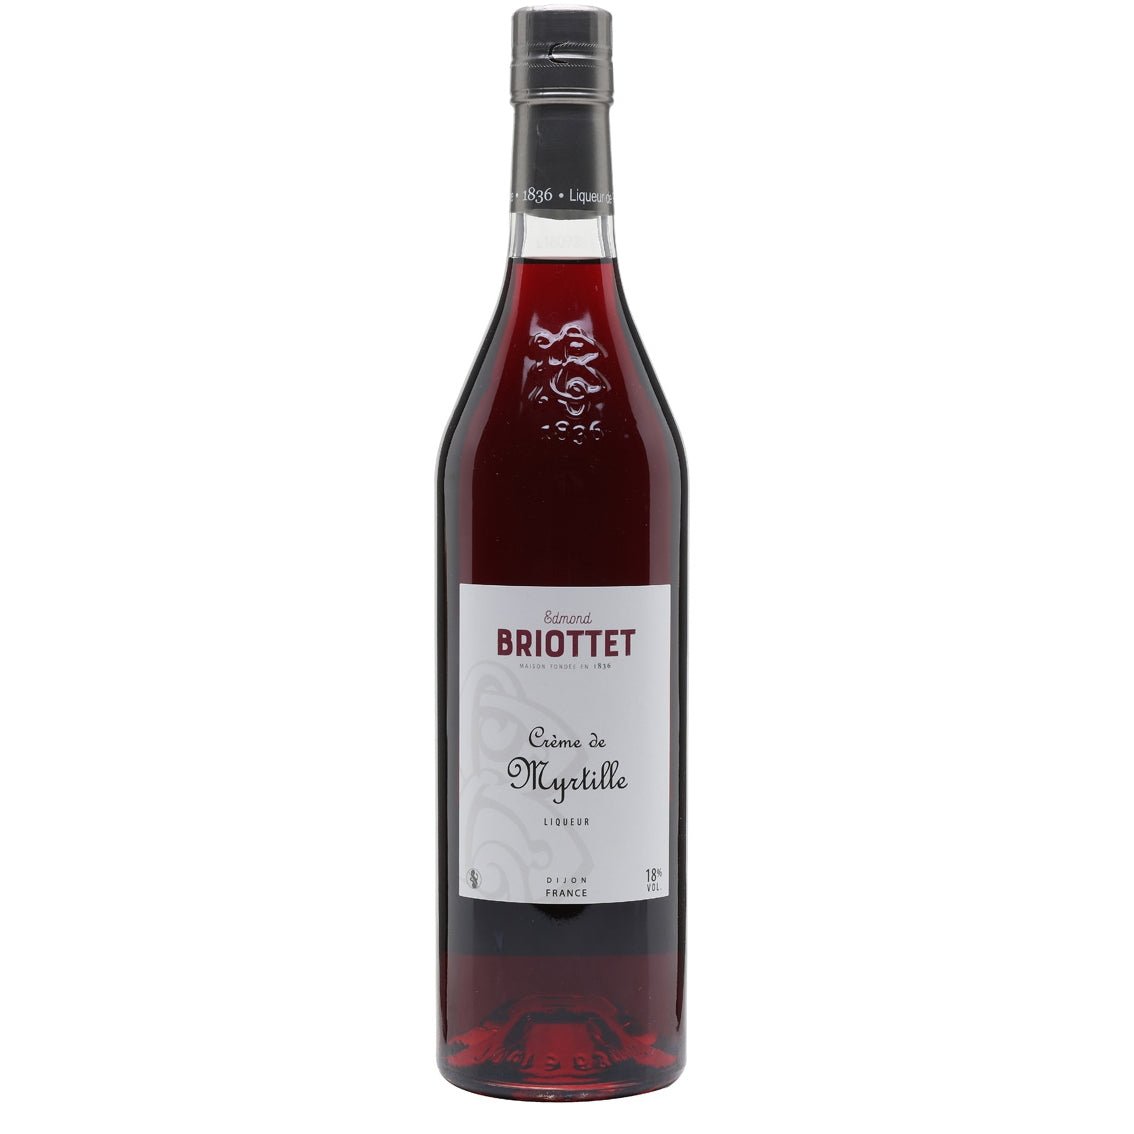 Briottet Creme de Myrtille - Latitude Wine & Liquor Merchant